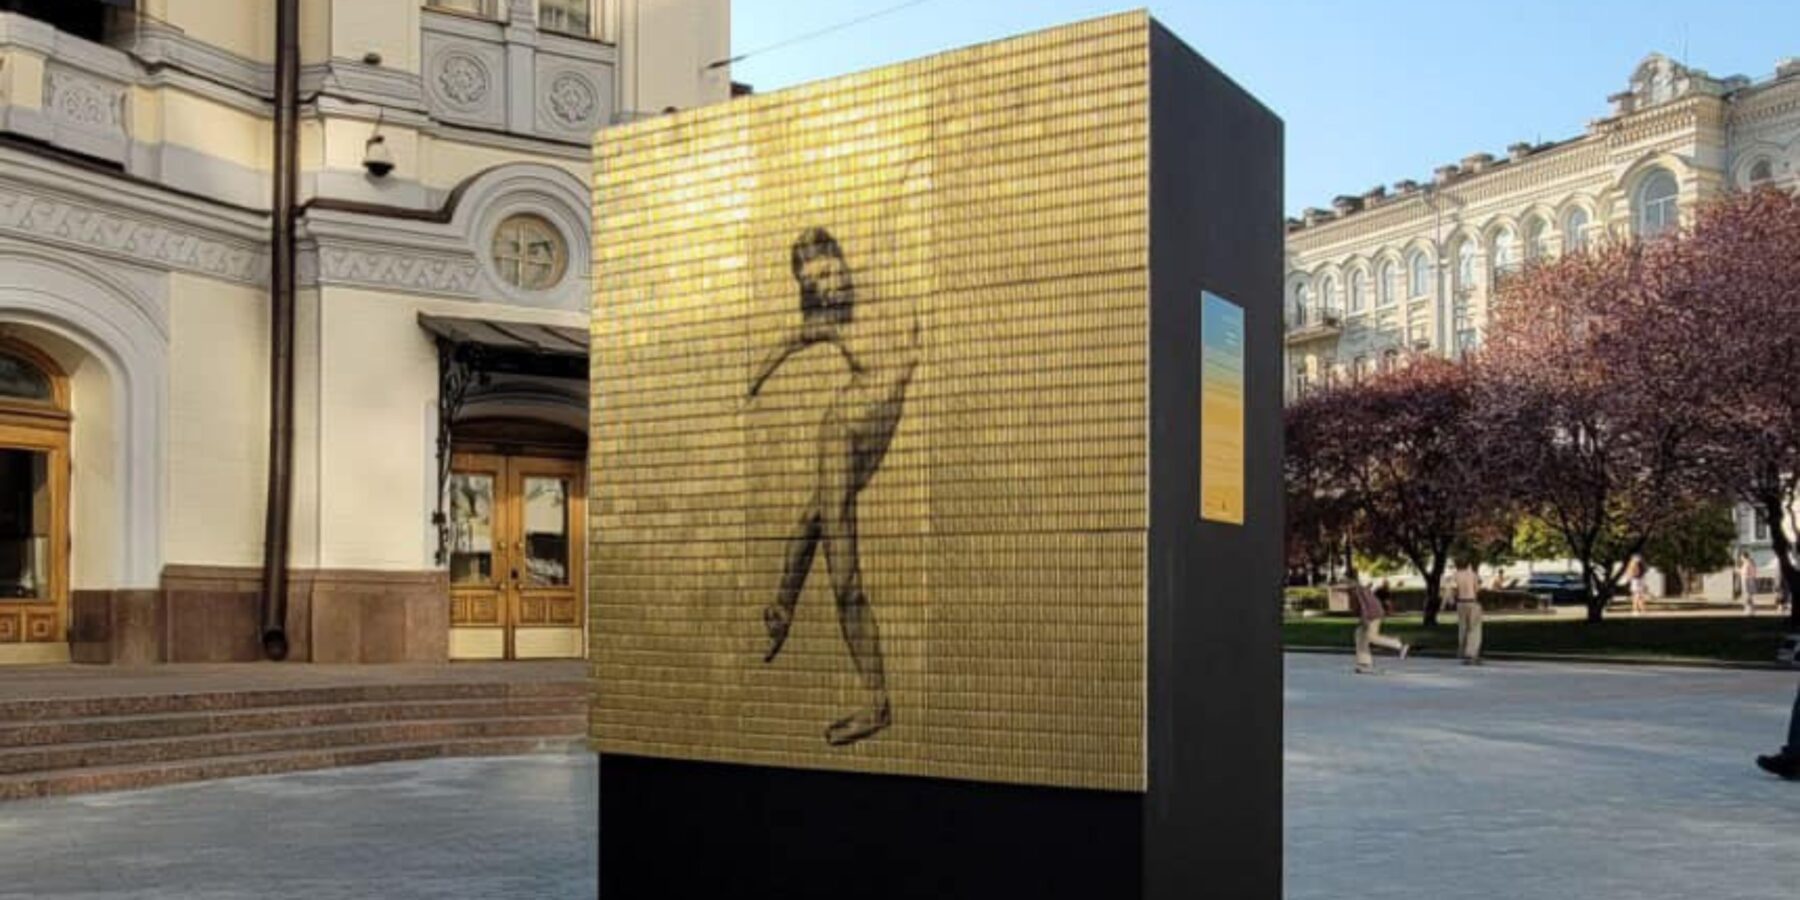 У Києві відкрили інсталяцію із зображенням балерини на стріляних гільзах